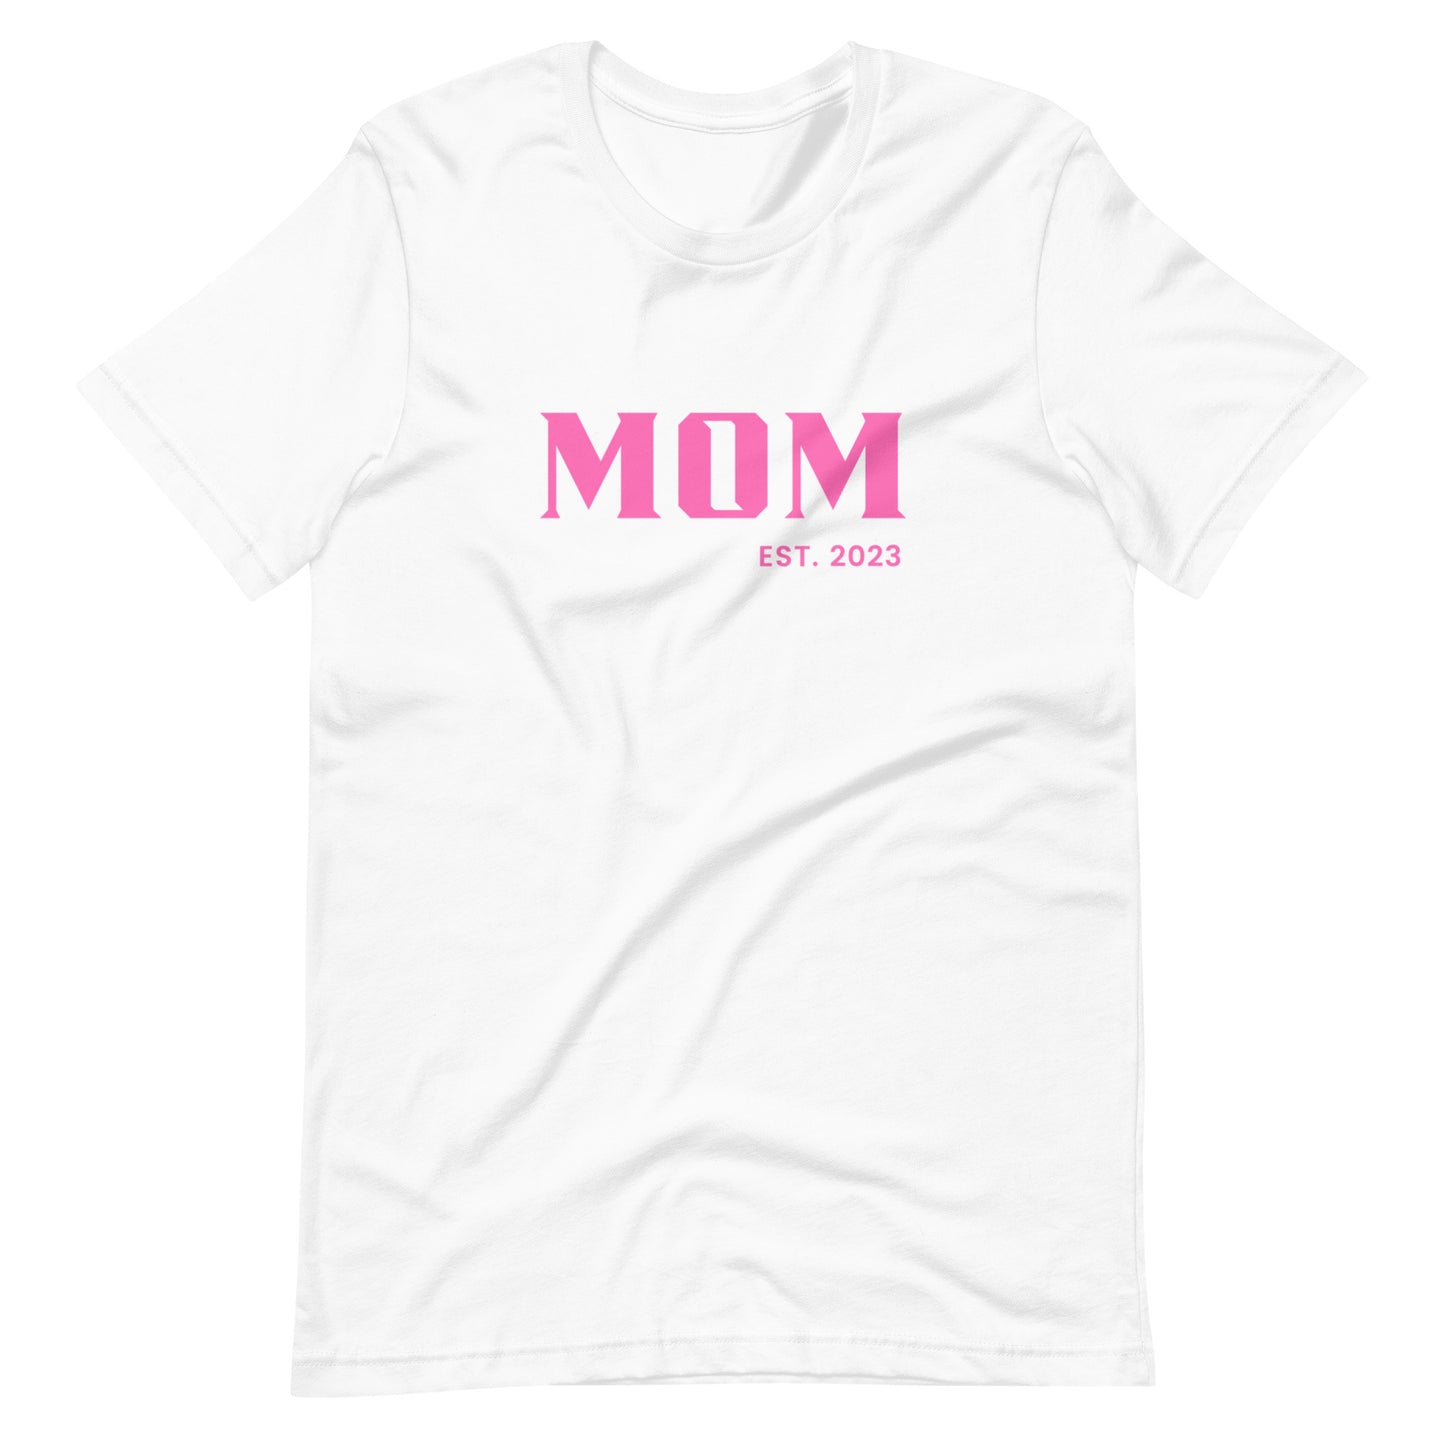 MOM EST. 2023 t-shirt